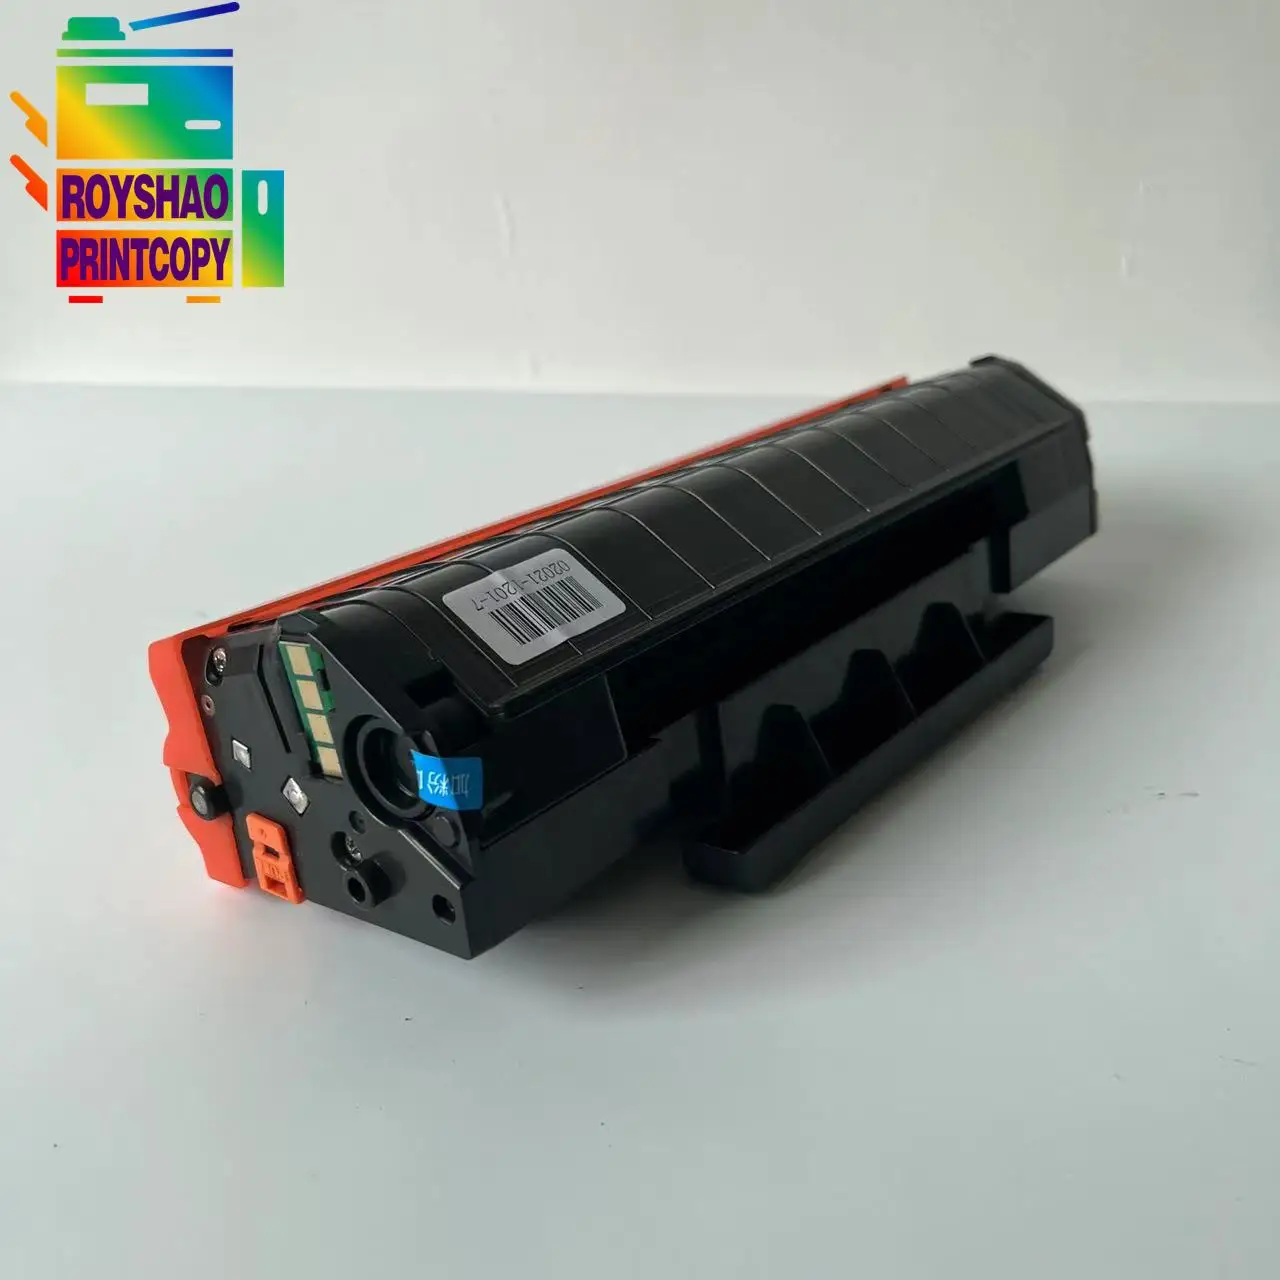 

PC211 PC210 Toner Cartridge + Unlimit Chip for Pantum P2207 P2500 P2501 P2500W P2505 P2550 P2200 M6200 M6500 M6550 PC-210 PC-211